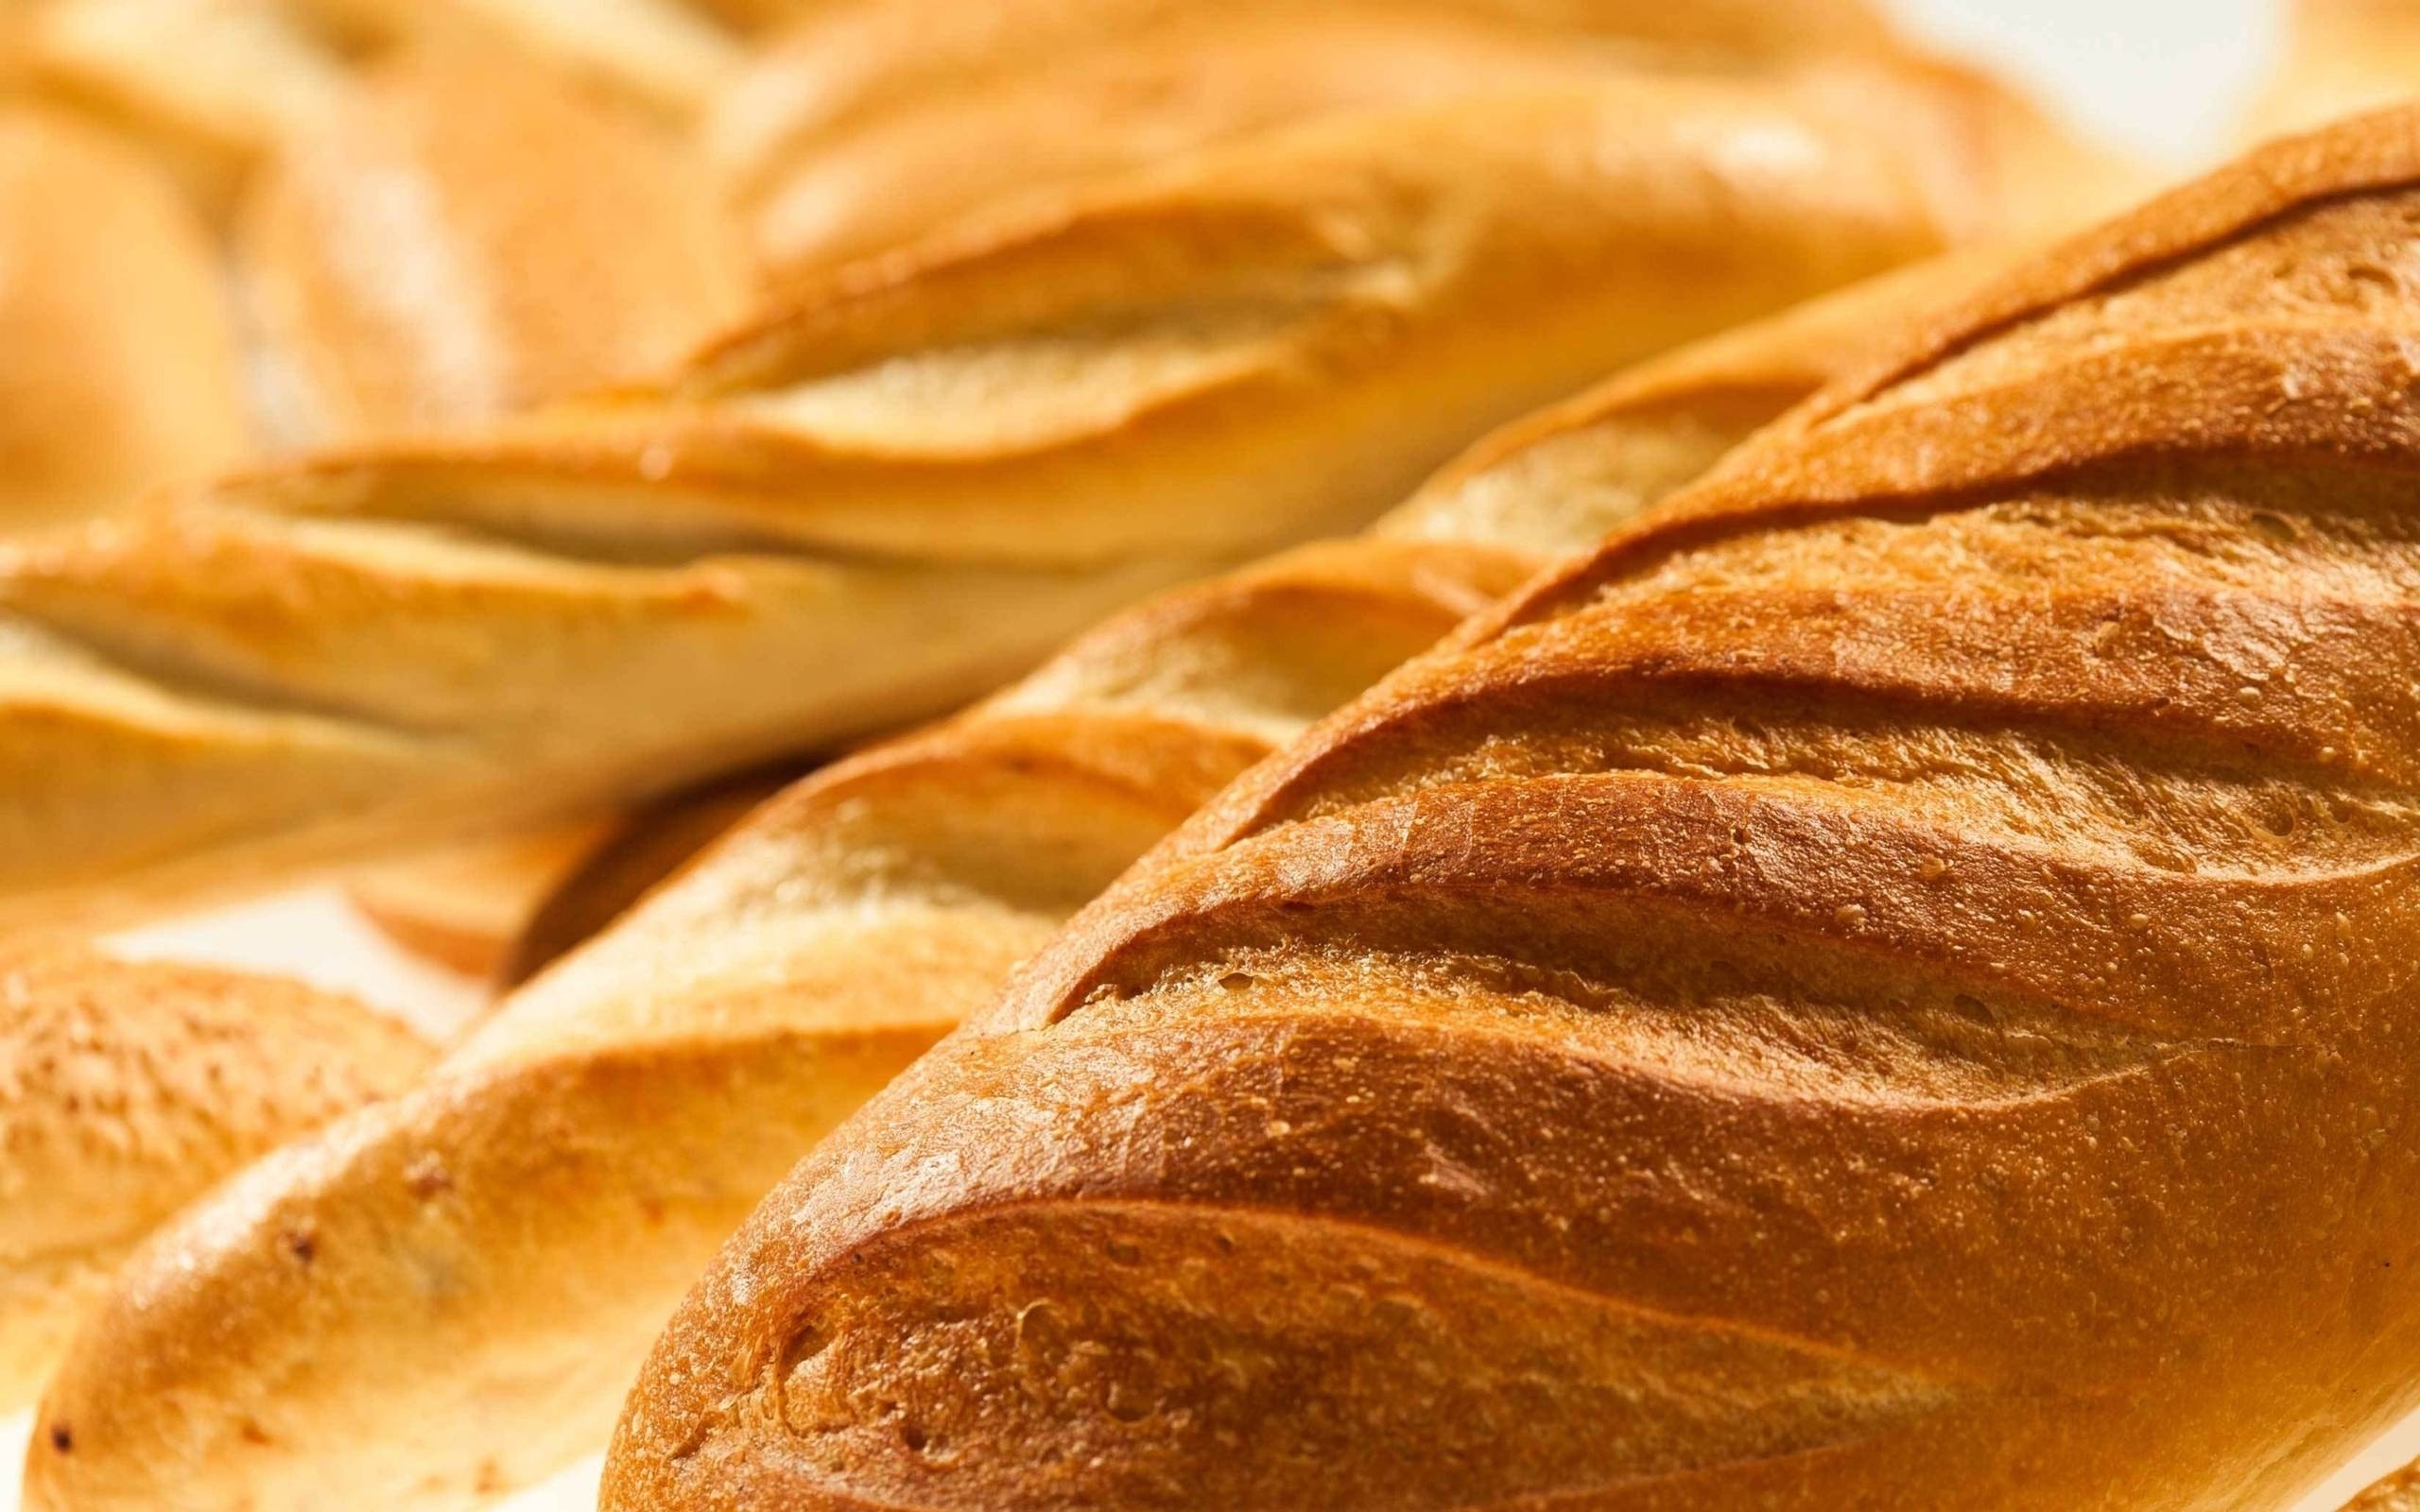 В Україні вартість хліба може зрости на понад 20%